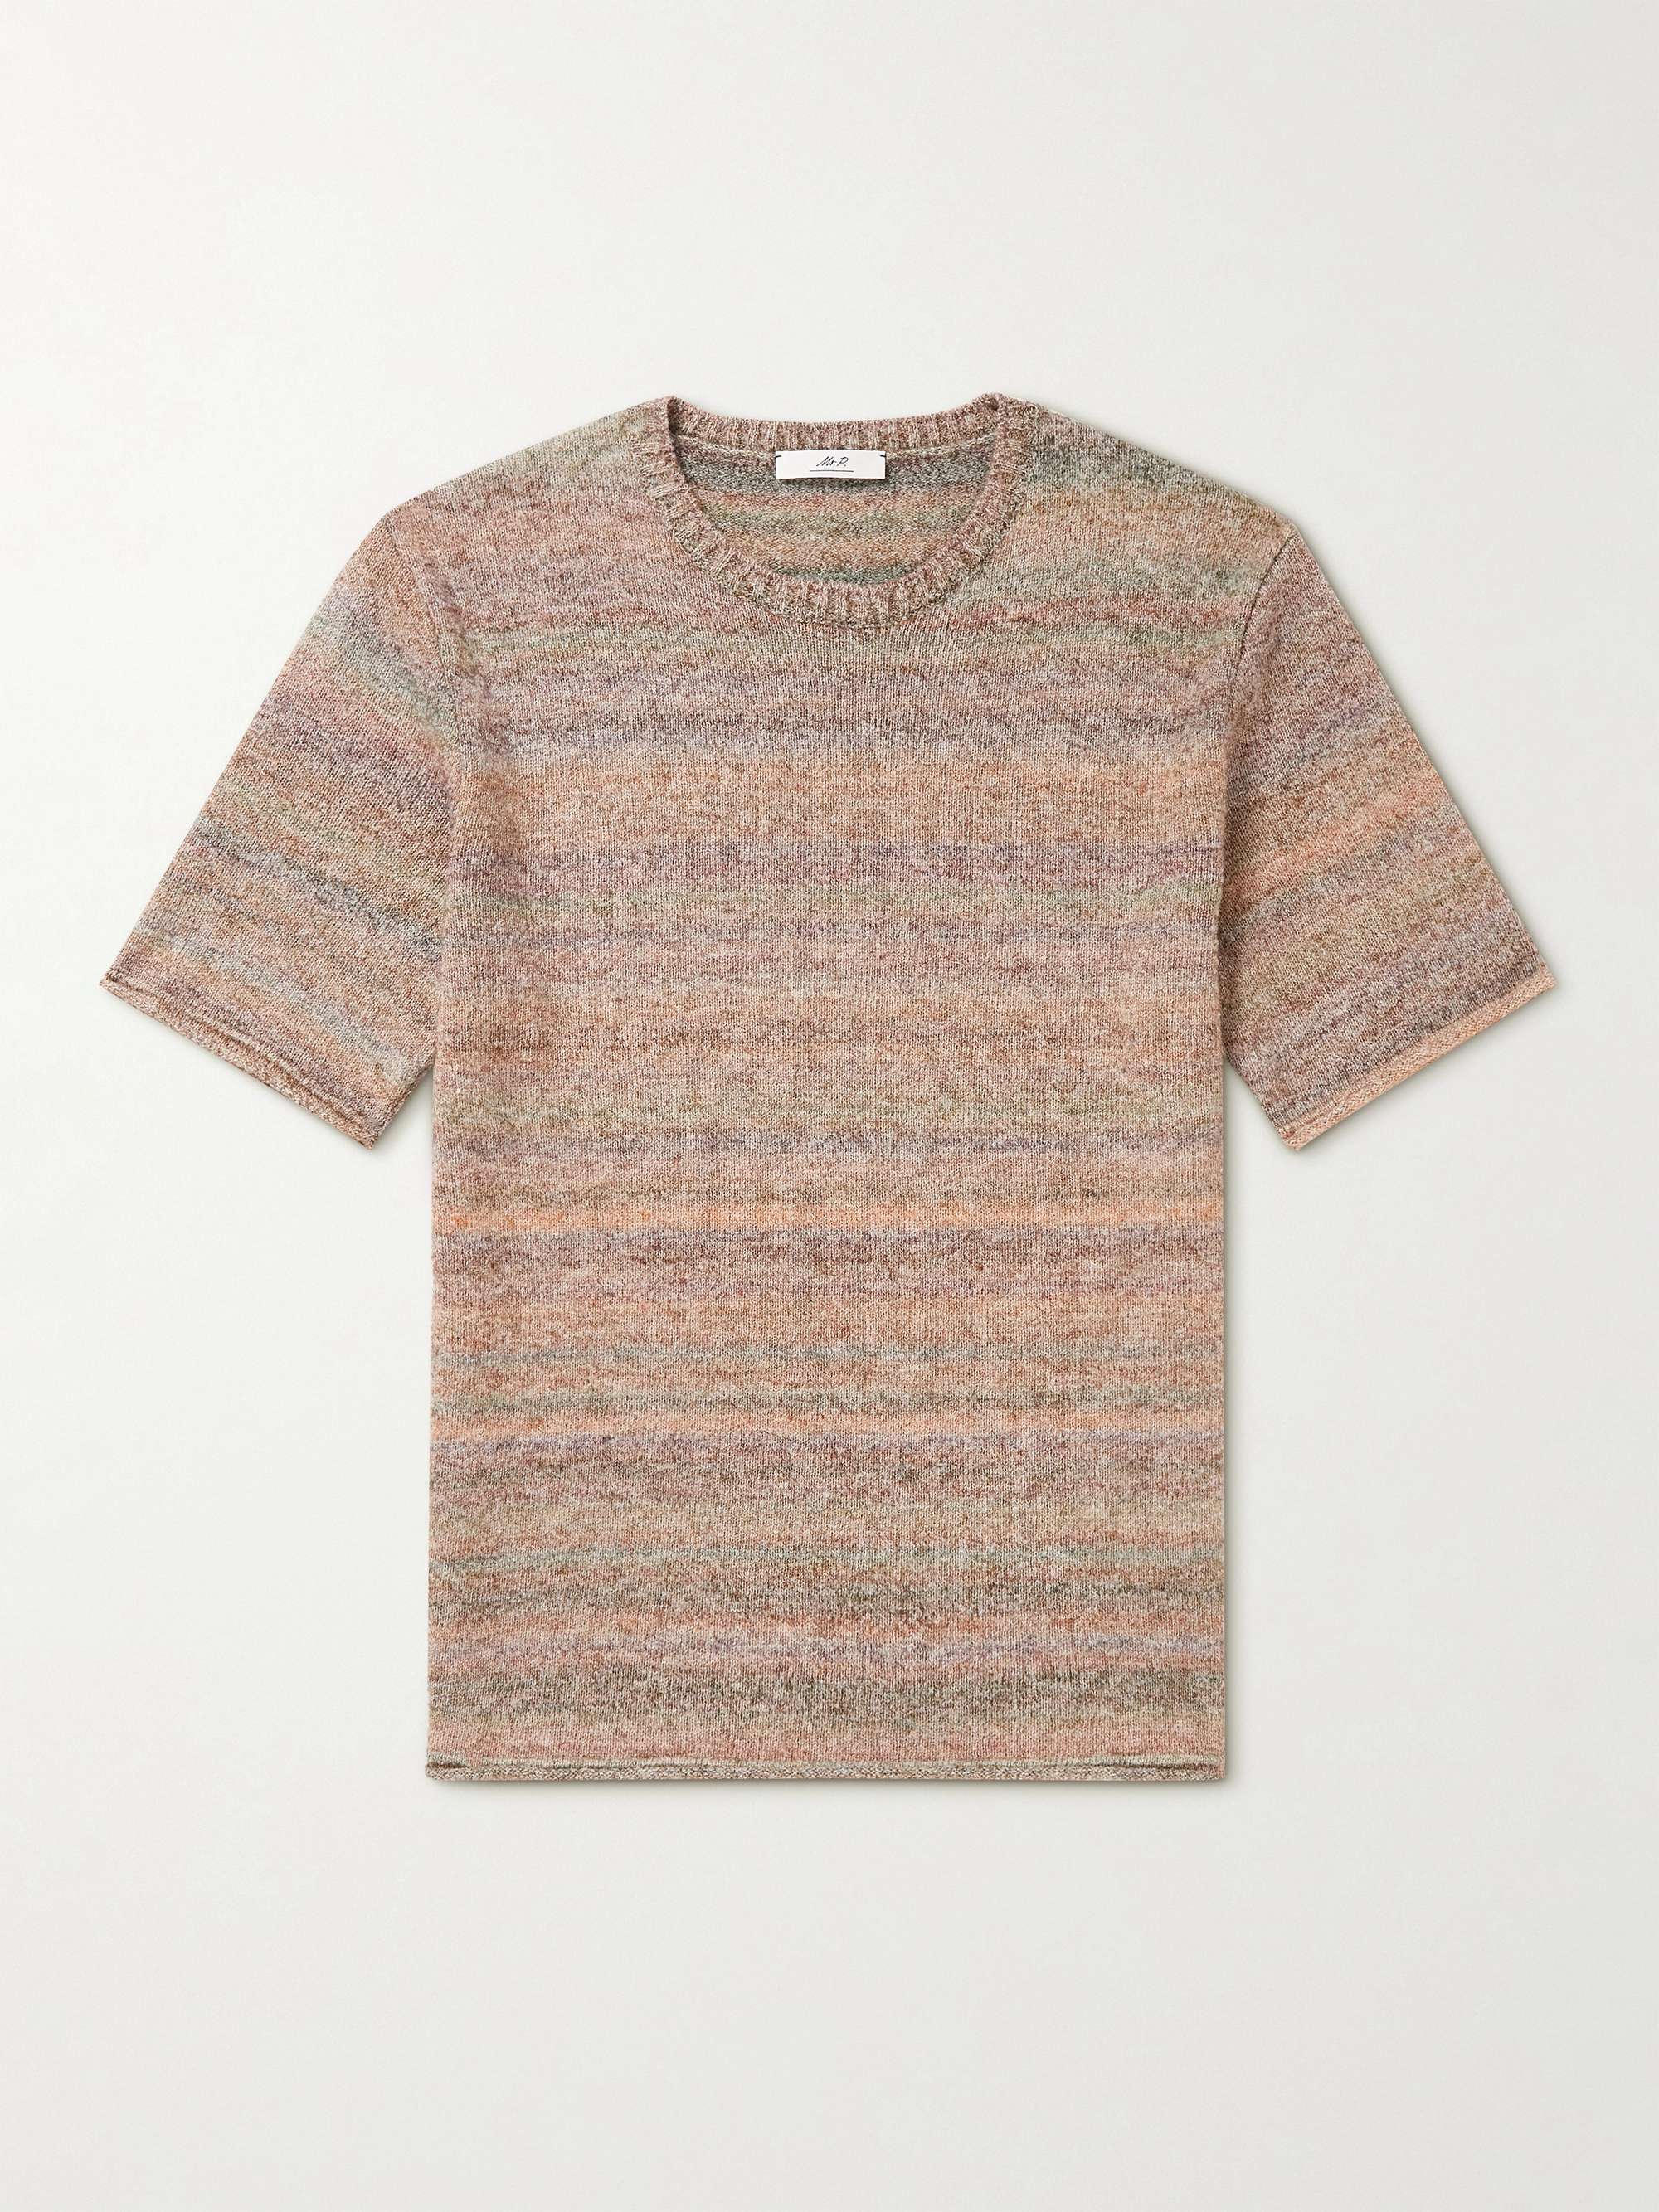 MR P. Surplus Bouclé-Knit T-Shirt